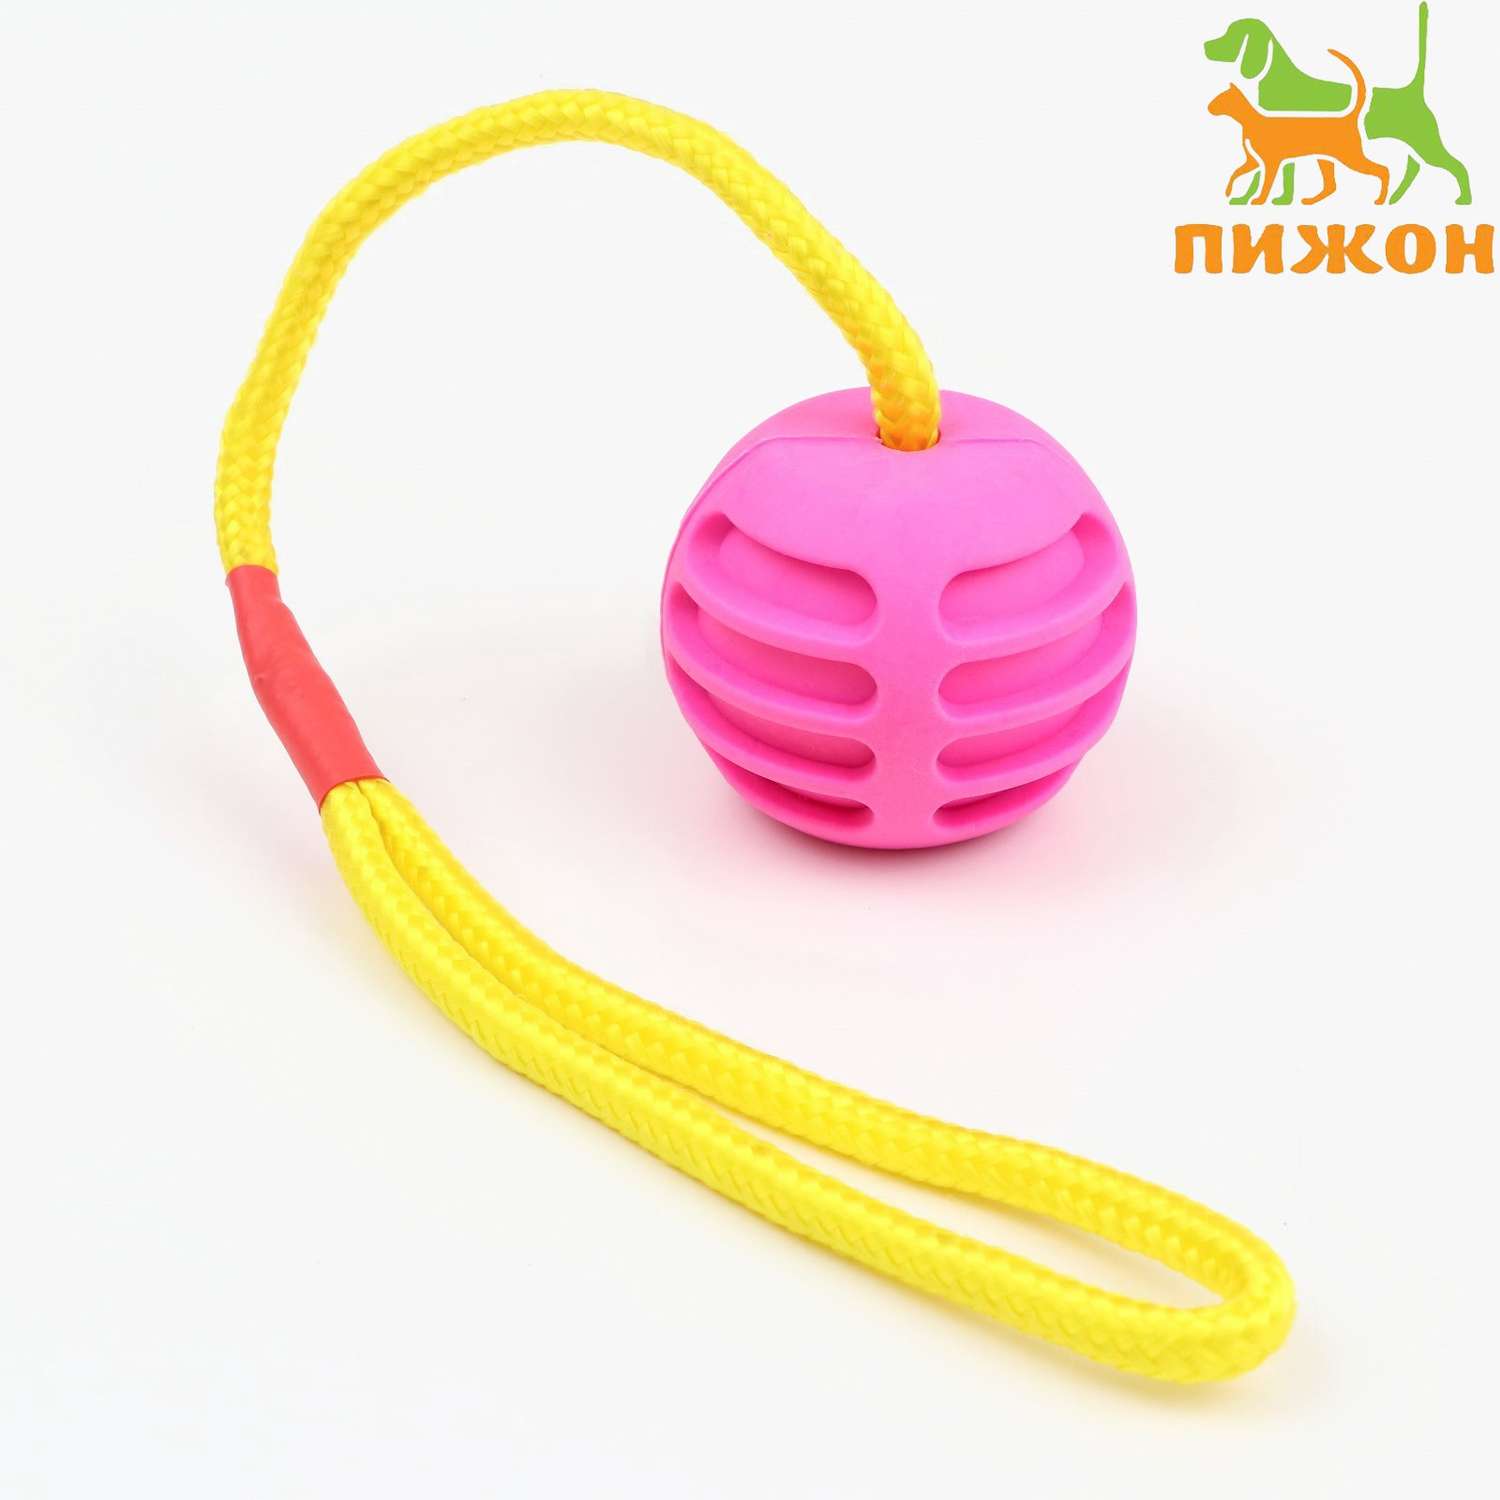 Игрушка Пижон «Шар усиленный на веревке» 43 см шар 6 см розовый - фото 1